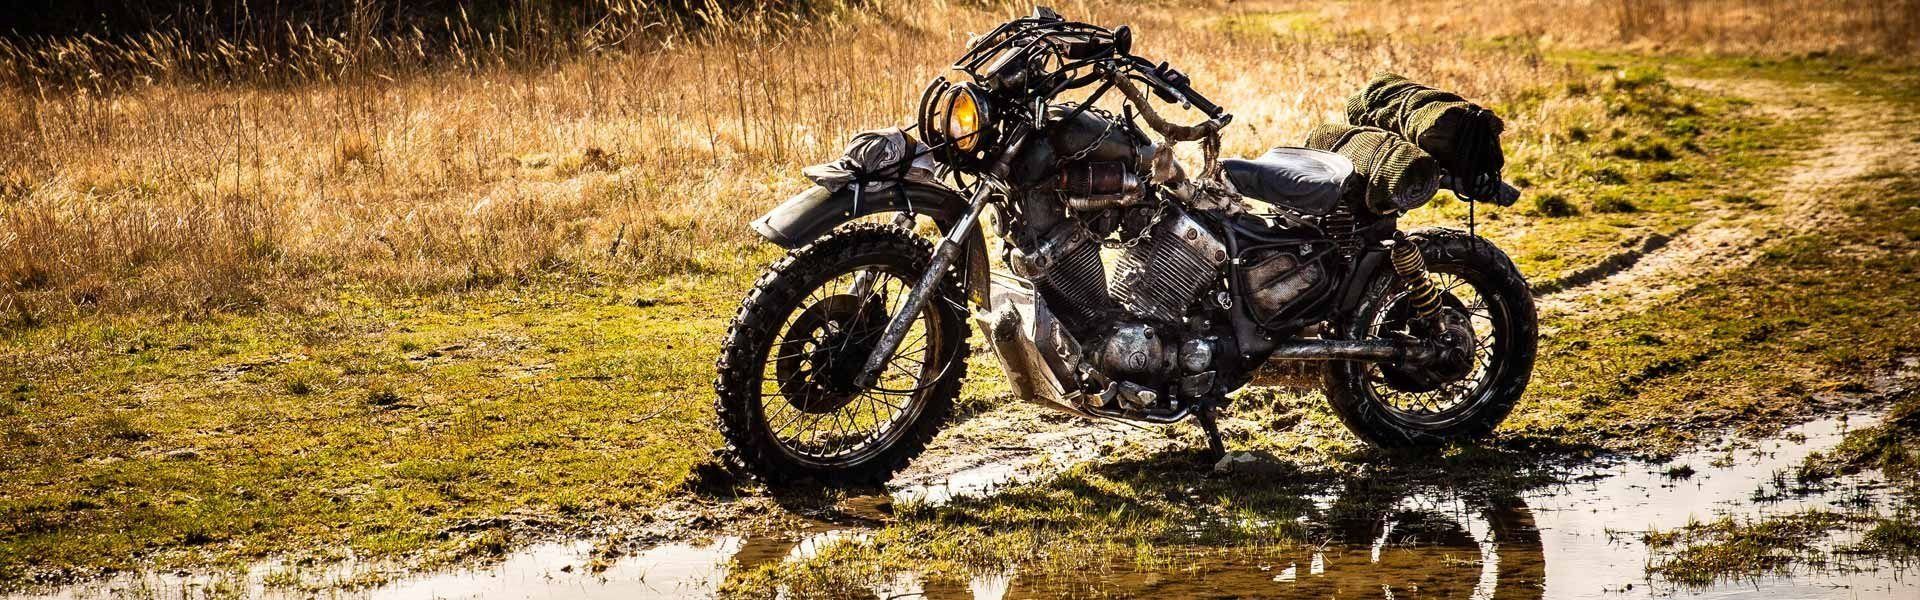 Un groupe de fondus du carbu reproduisent la moto de drifter de Days Gone dans le monde réel